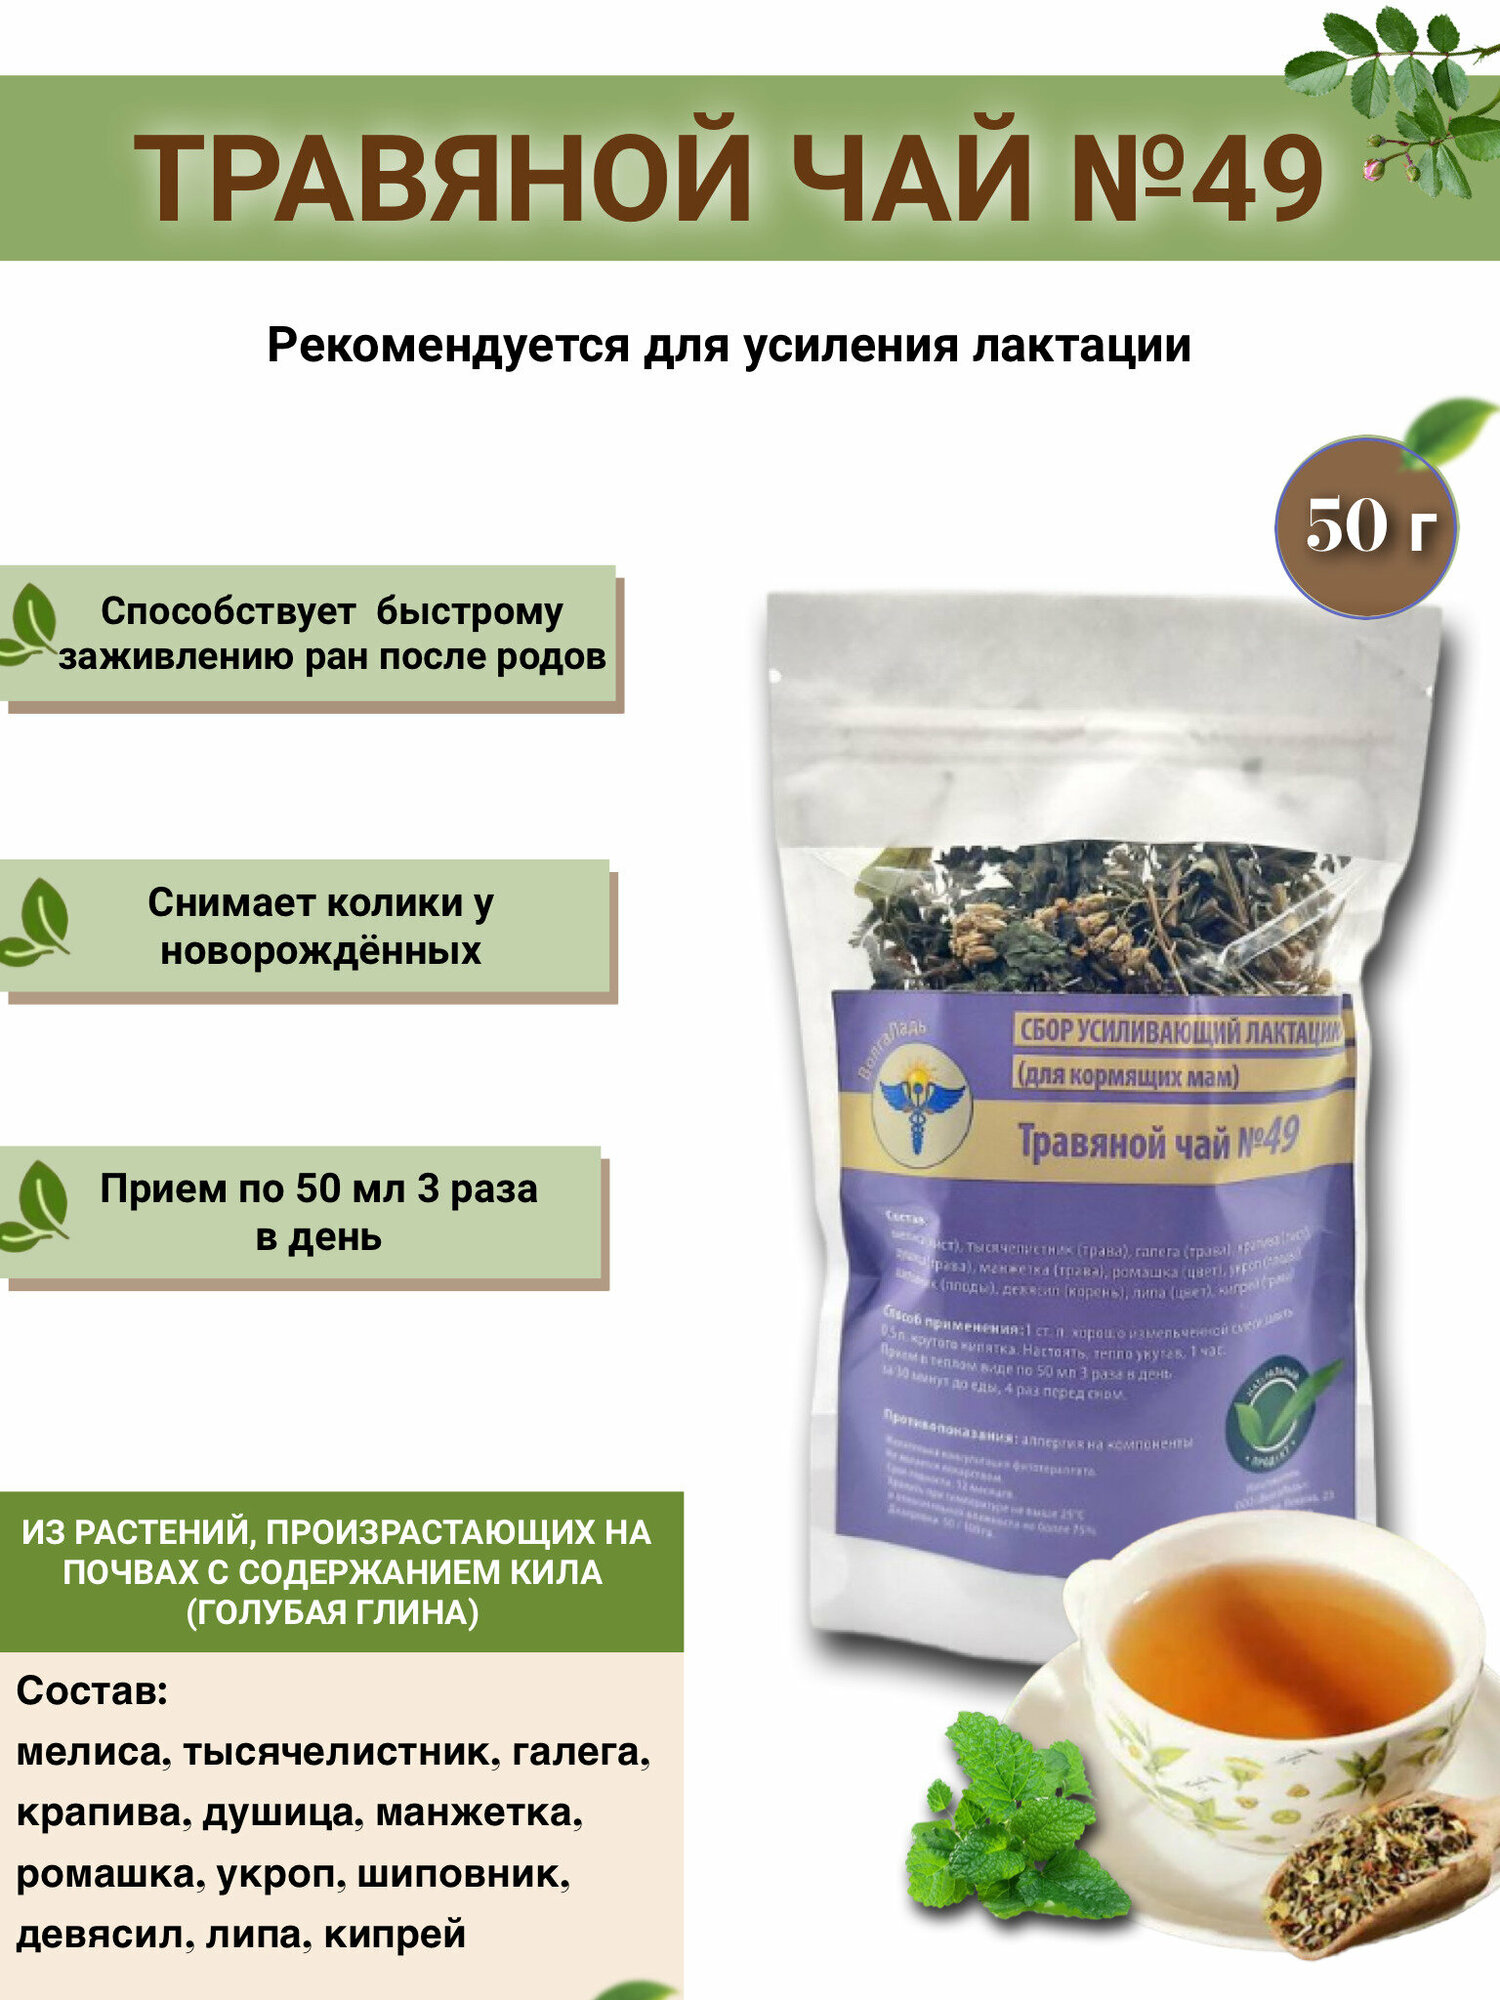 Травяной чай ВолгаЛадь № 49 Сбор усиливающий лактацию